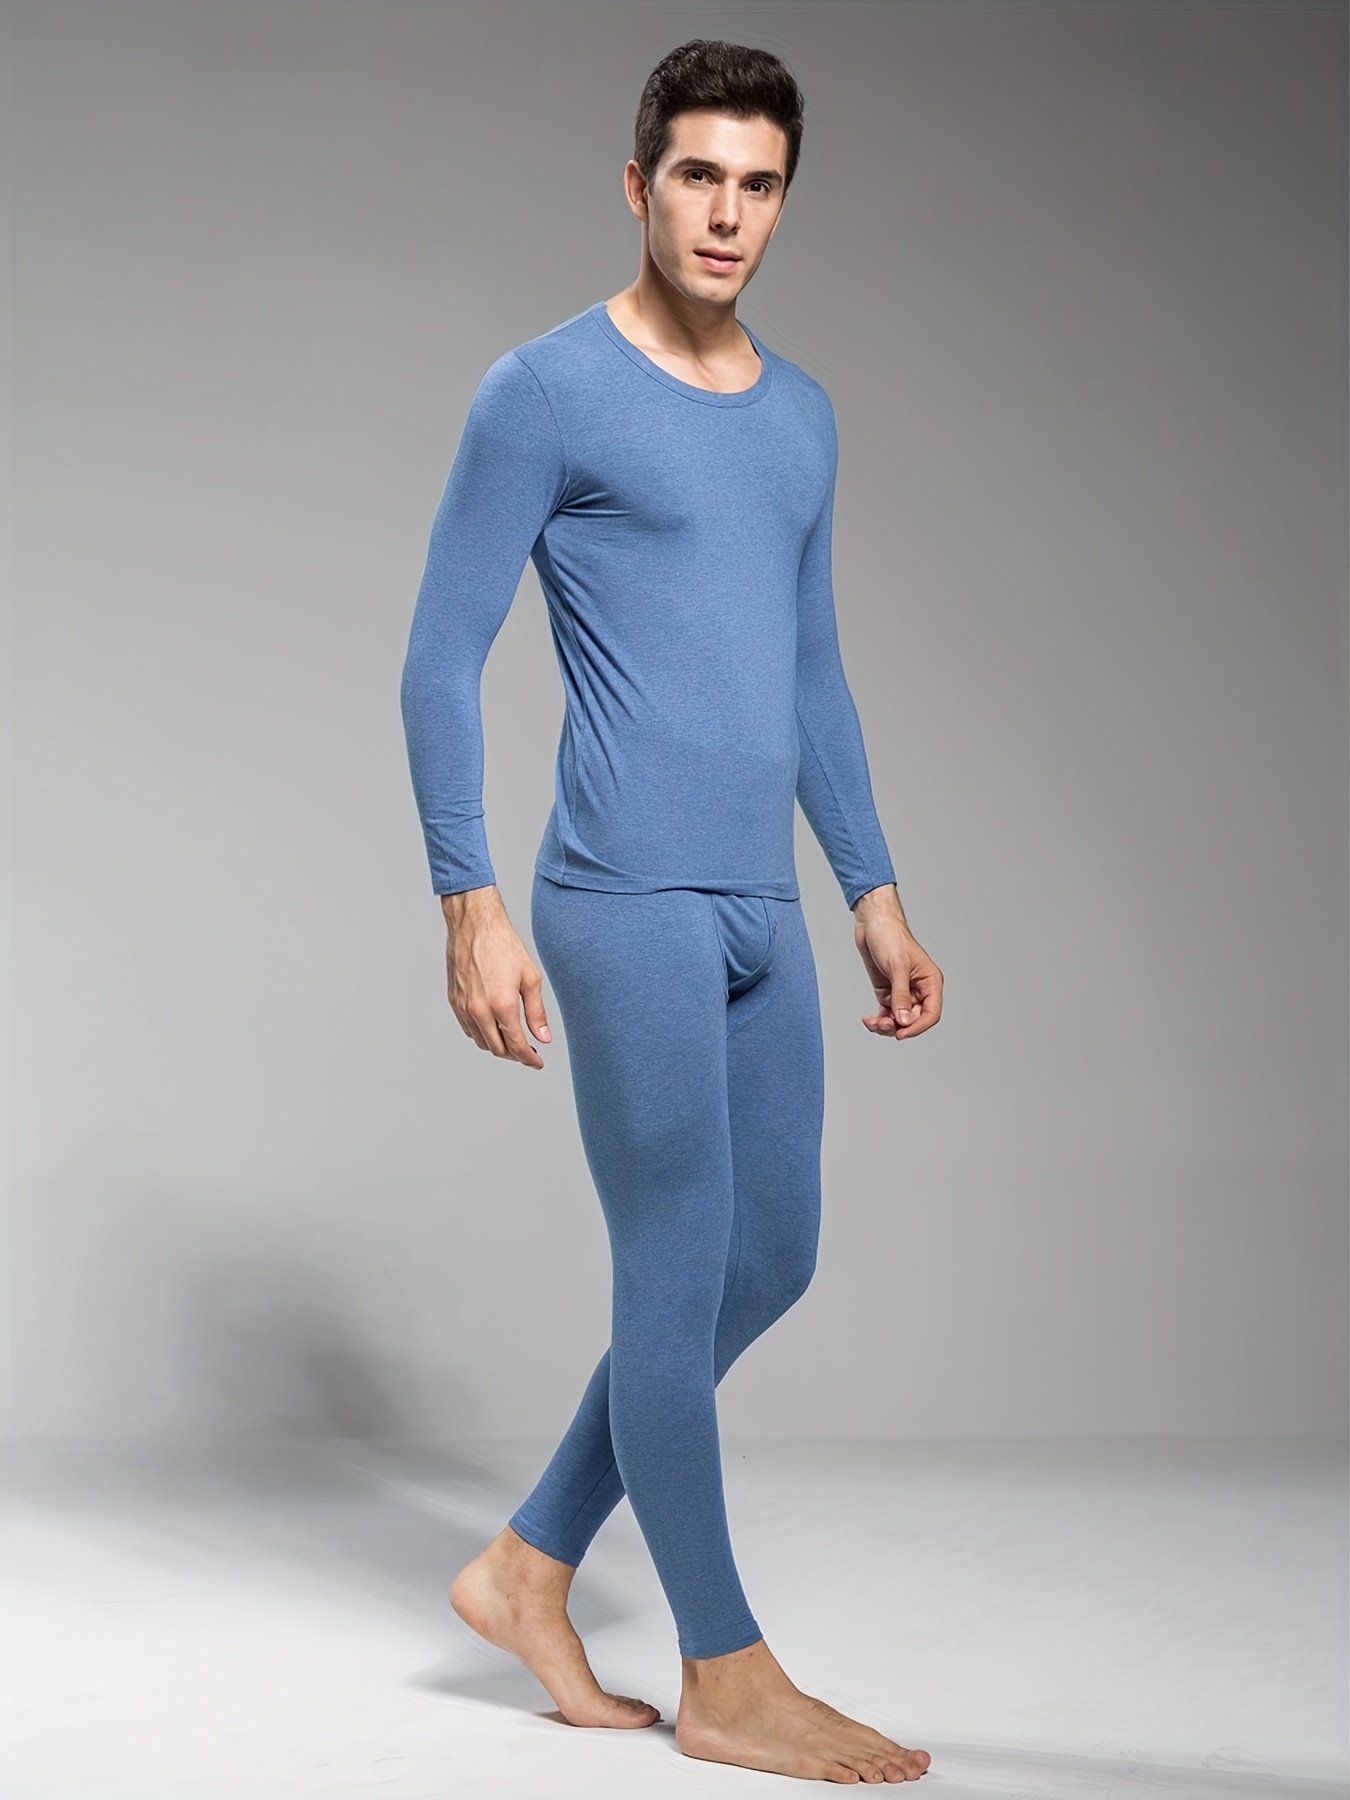 Conjunto de ropa interior para hombre de manga larga | Pantalón